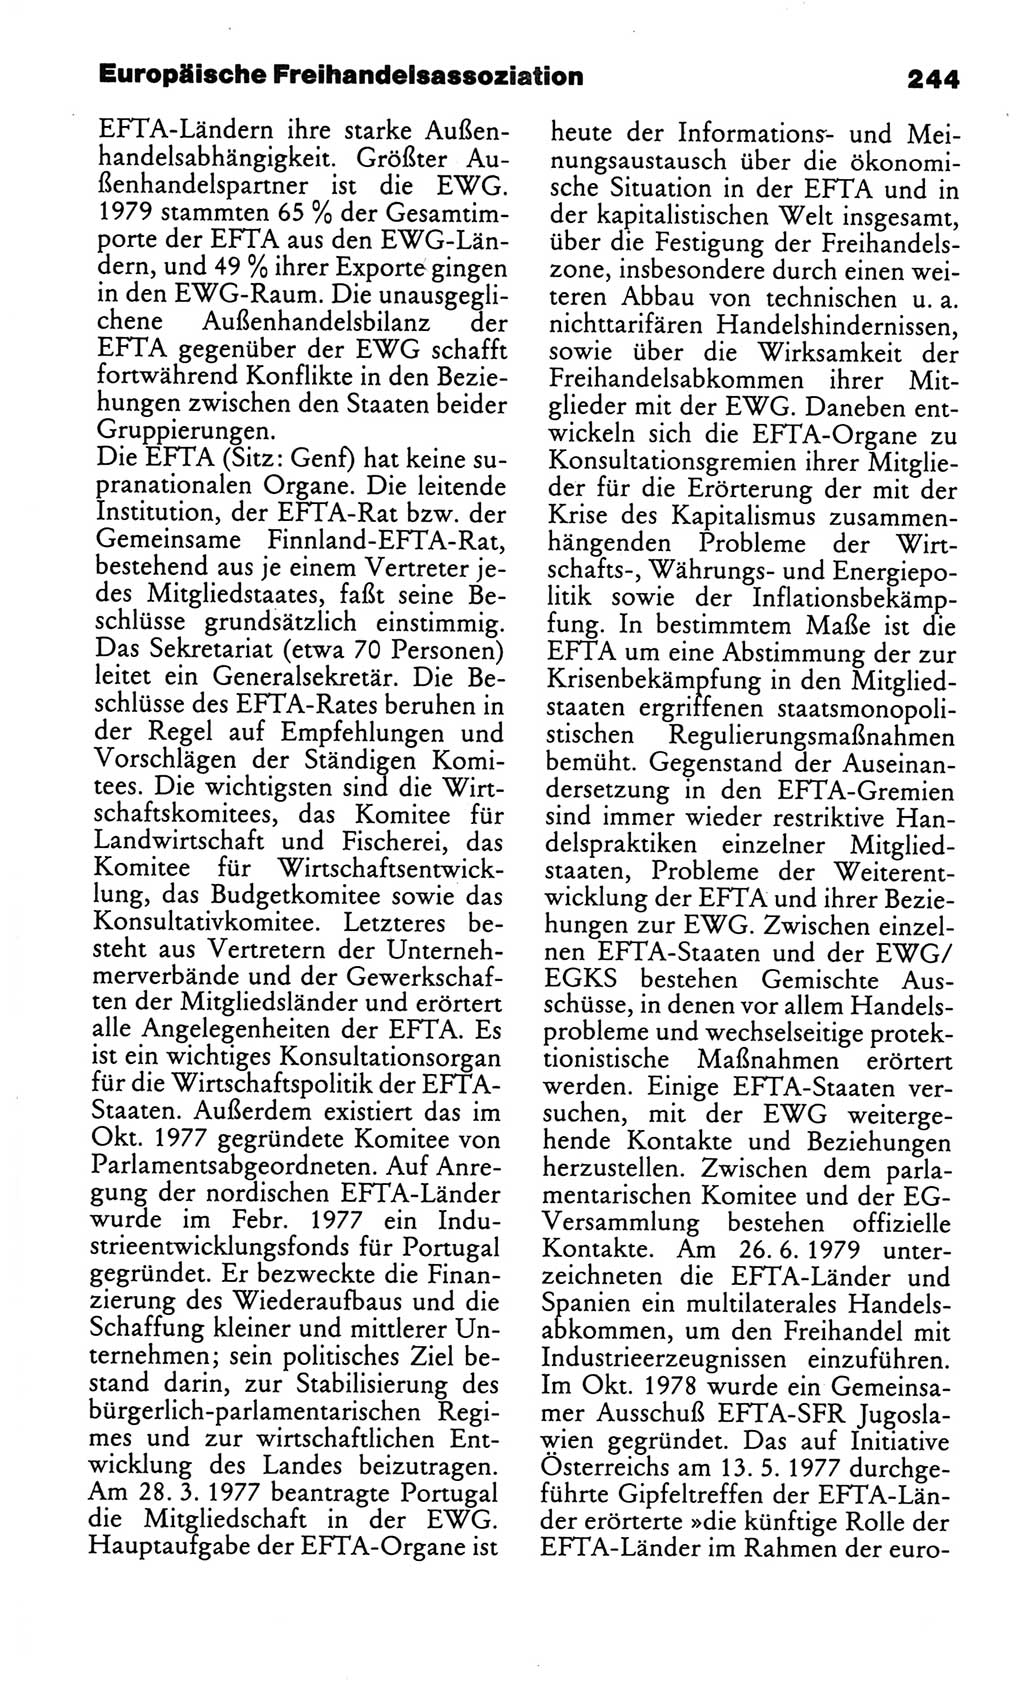 Kleines politisches Wörterbuch [Deutsche Demokratische Republik (DDR)] 1986, Seite 244 (Kl. pol. Wb. DDR 1986, S. 244)